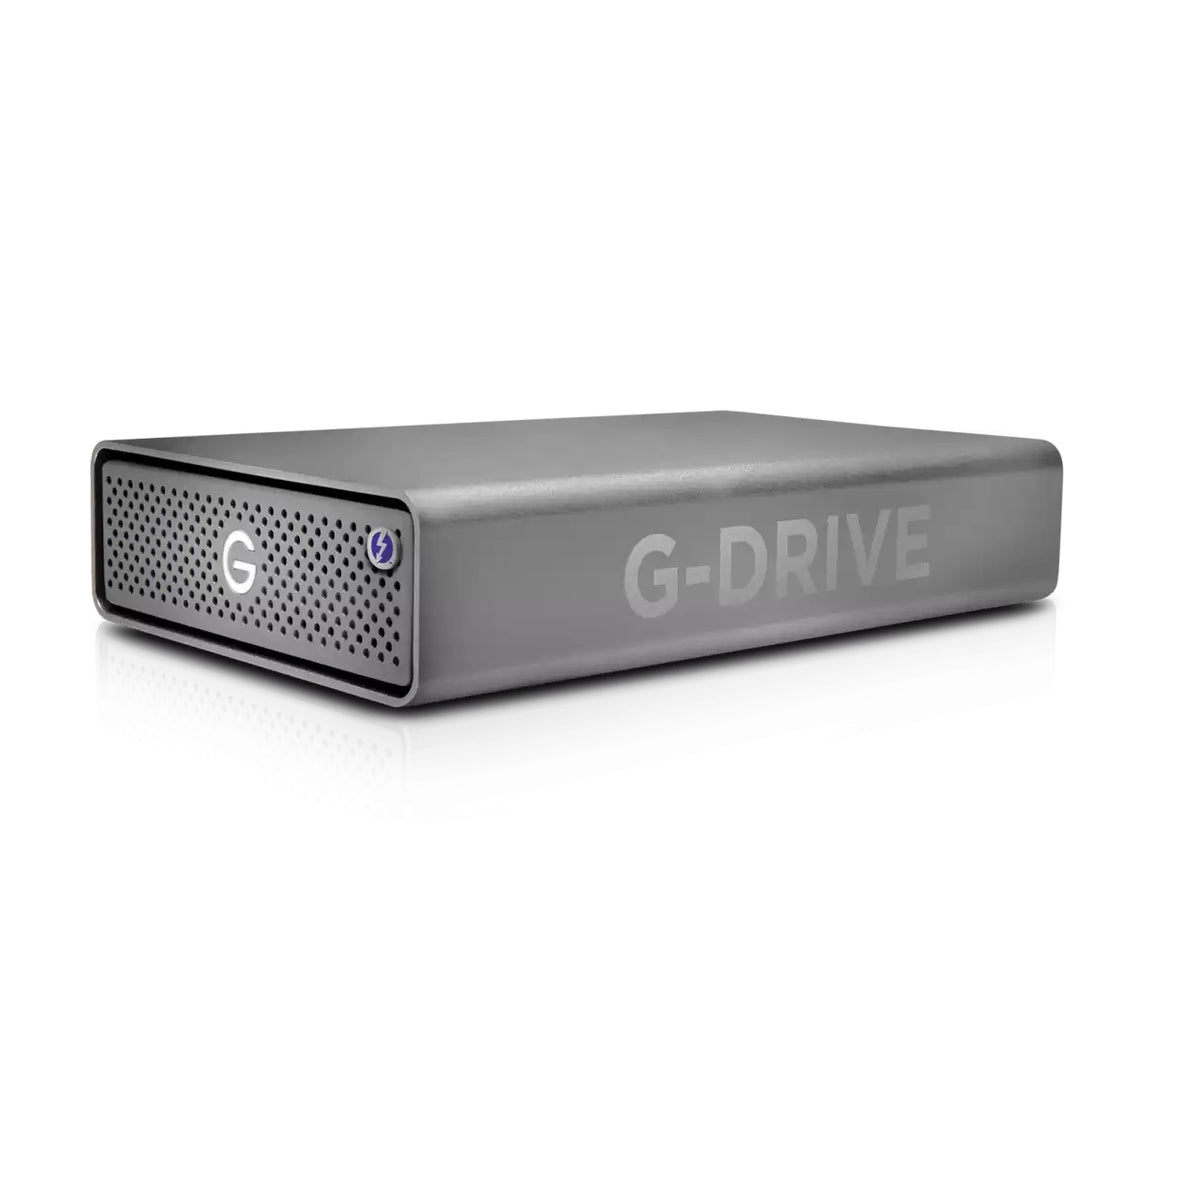 SanDisk Professional G-DRIVE PRO STUDIO - SSD - 7,68 TB - externo (sobremesa) - Thunderbolt 3 (conector USB C) - gris espacial